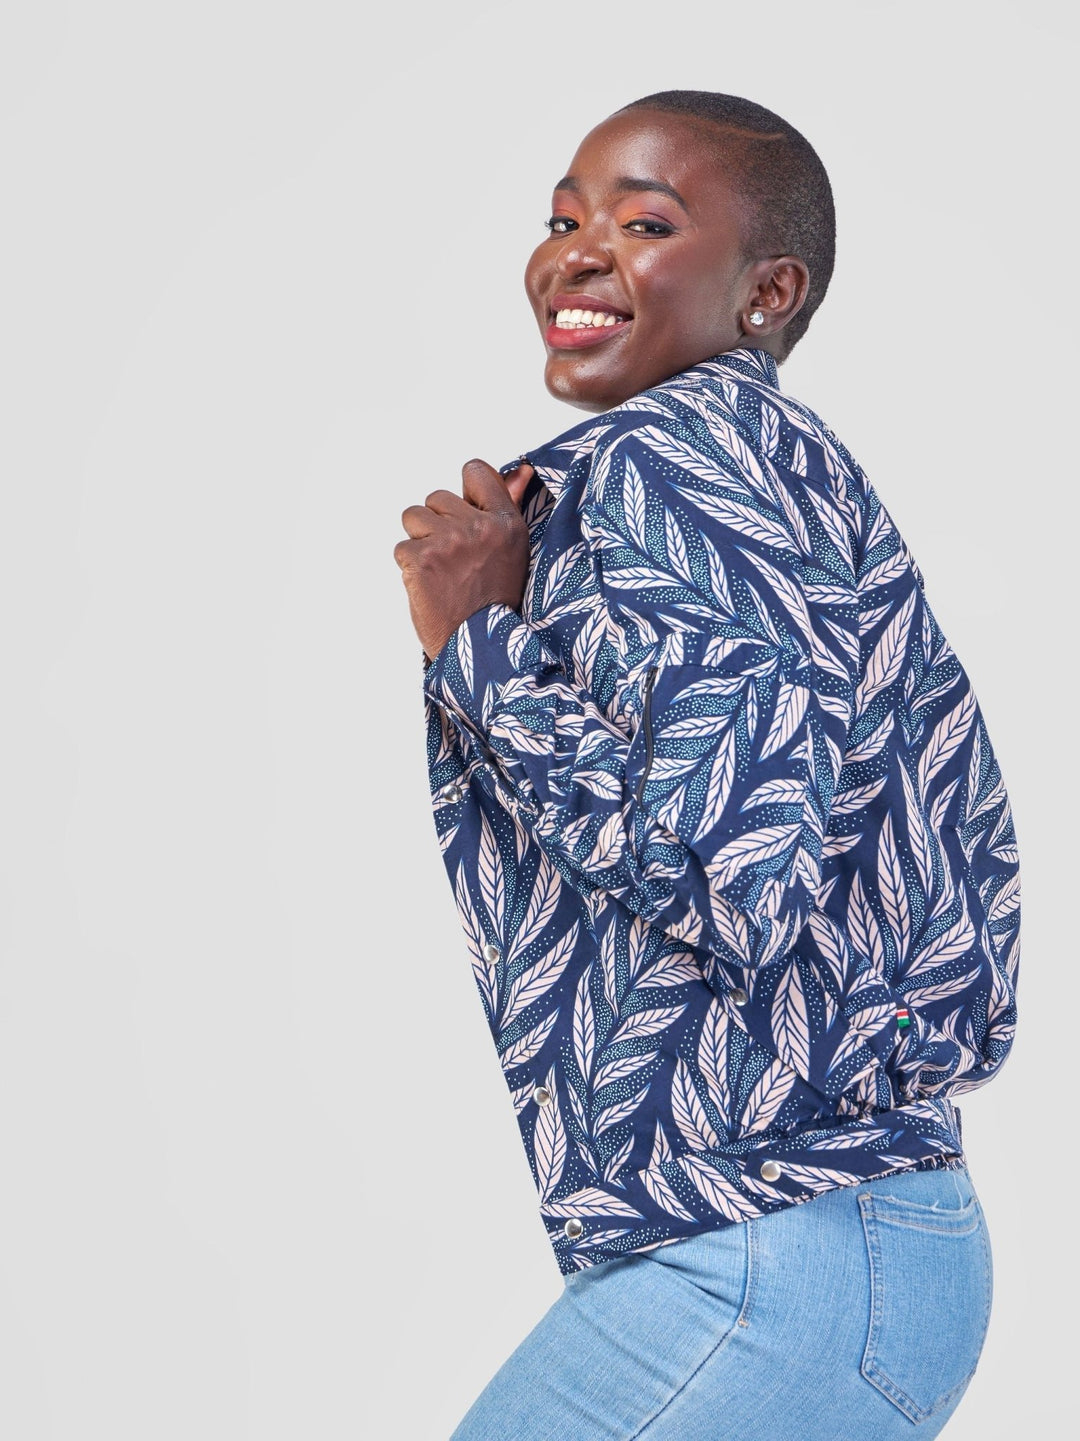 Jacke ‚Mwangaza‘ für 70 € - mikono.africa Jacken aus Kenia bunte Bomberjacke Partyjacke faire sozial nachhaltig designed in Kenia